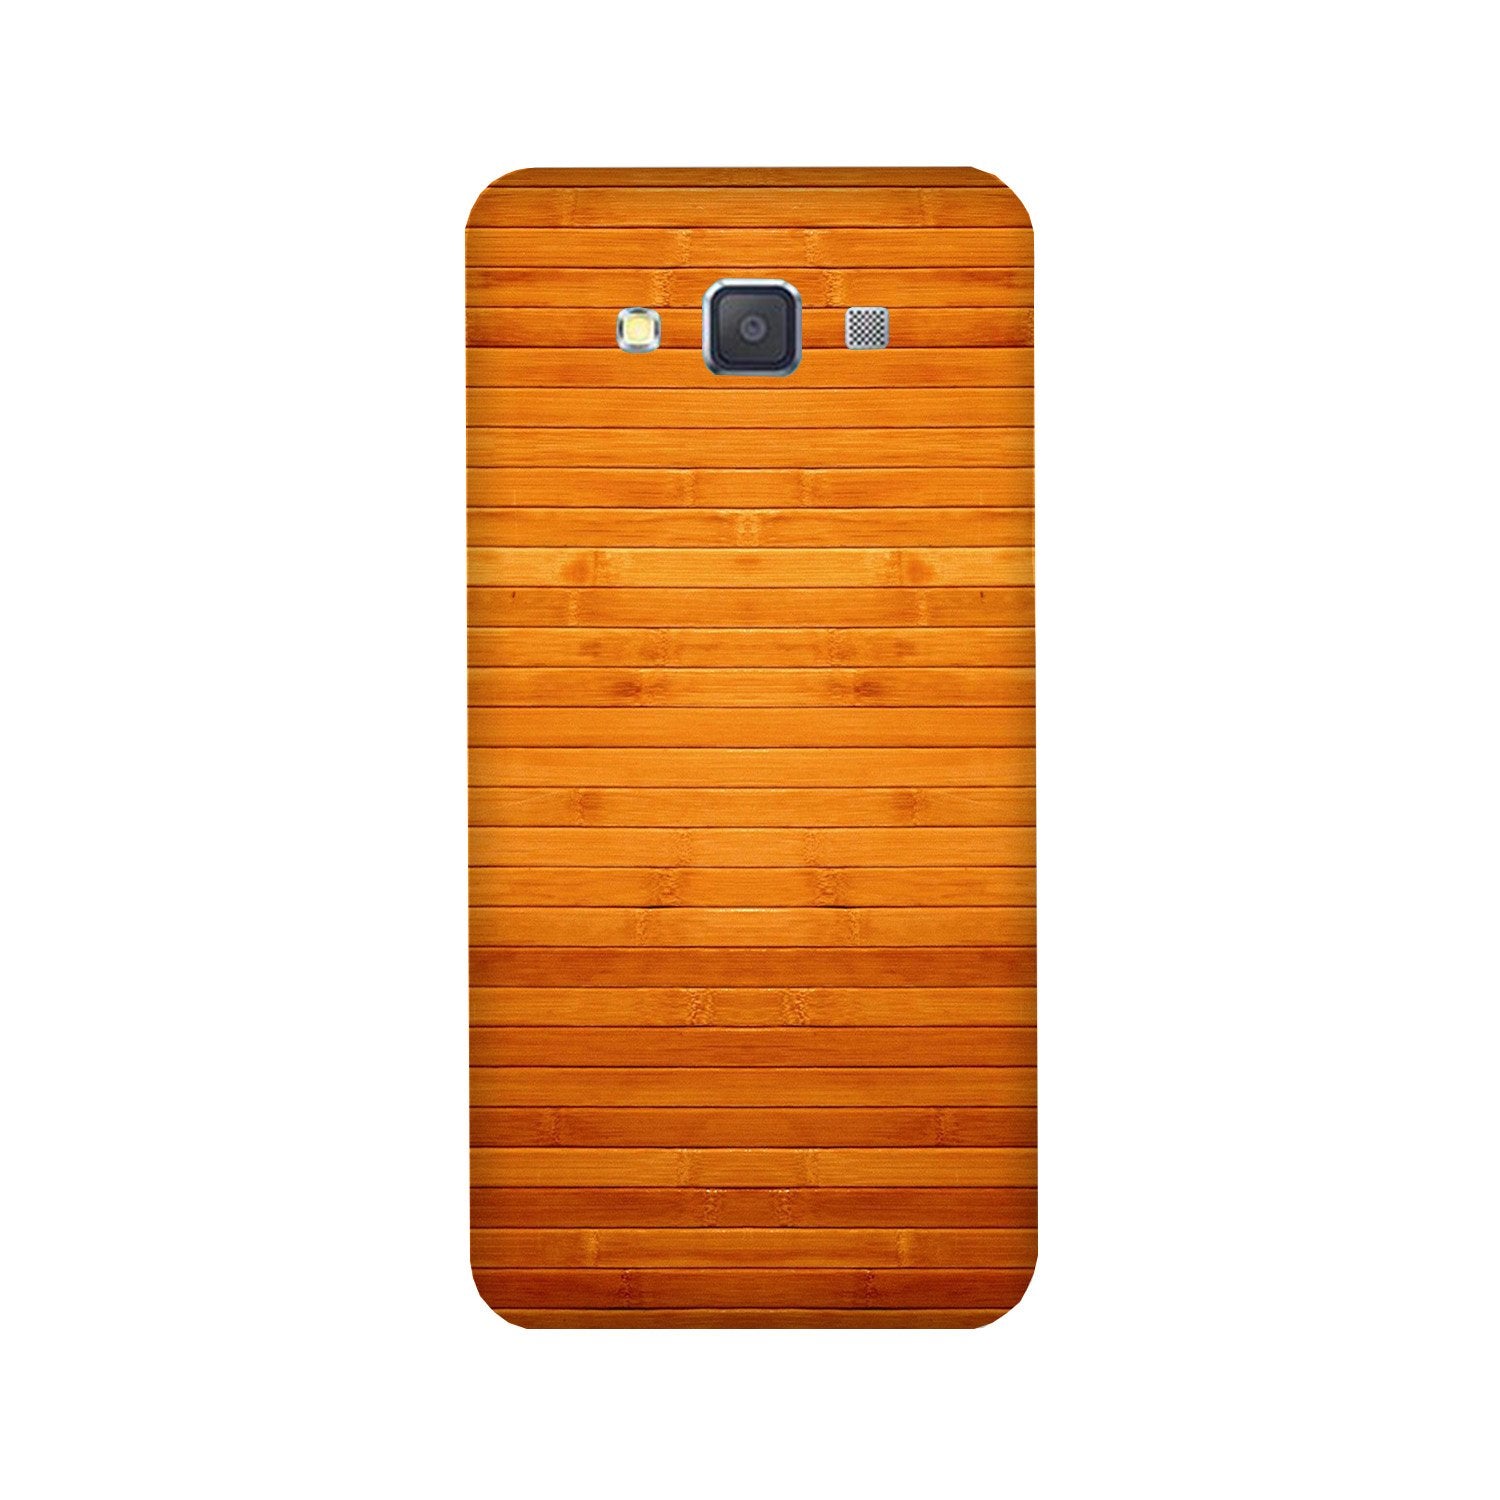 Wooden Look Case for Galaxy E7(Design - 111)